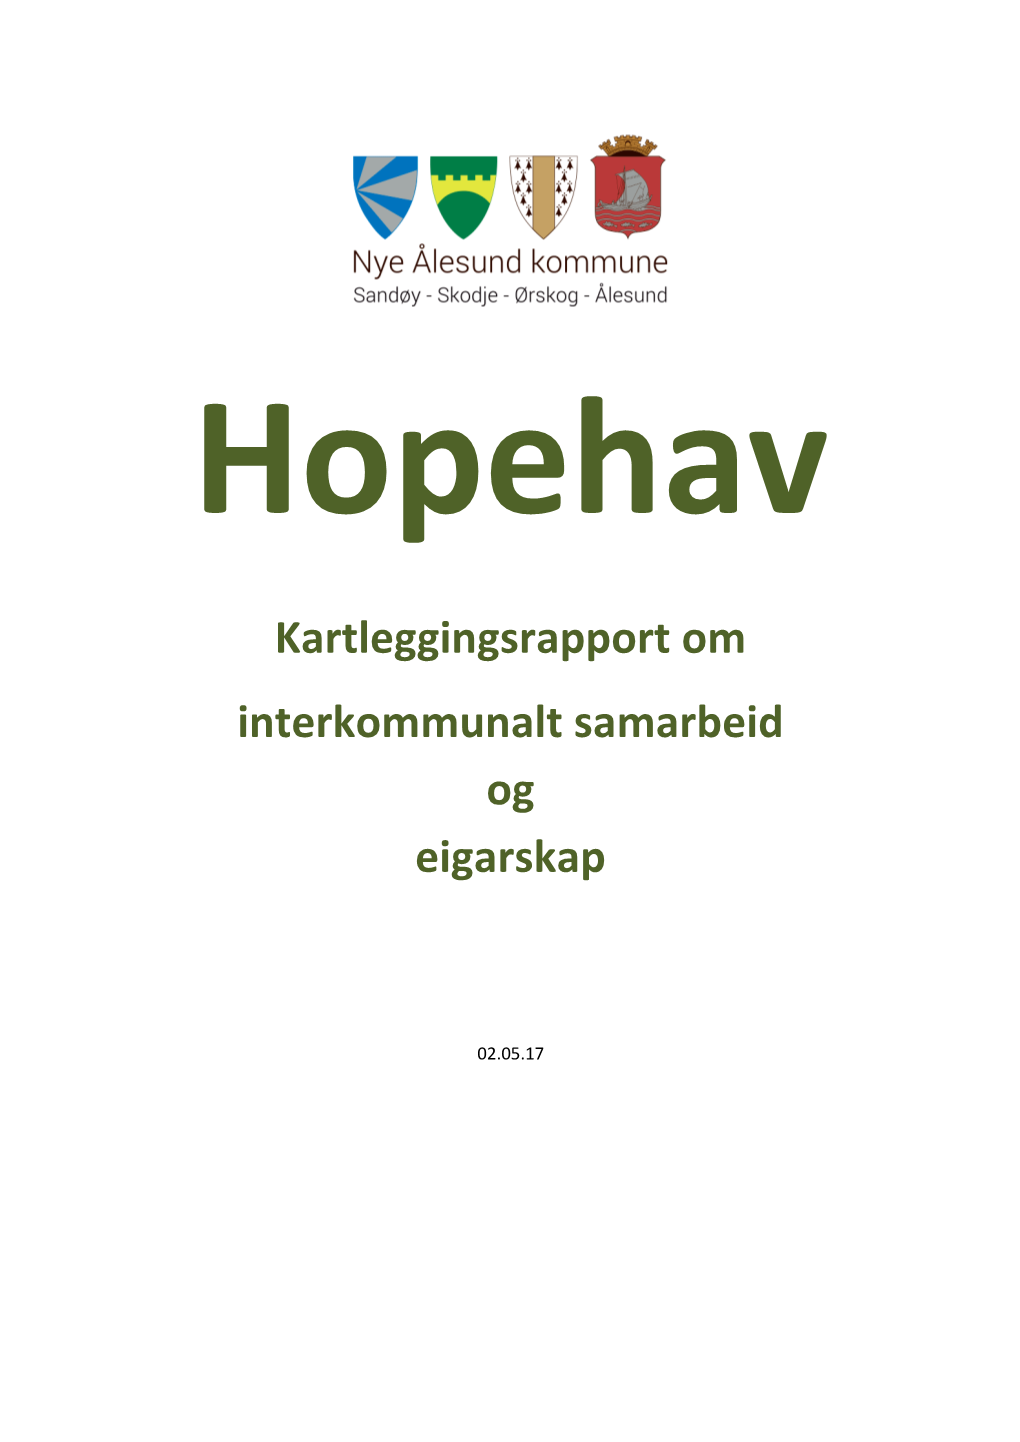 Hopehav Kartleggingsrapport Om Interkommunalt Samarbeid Og